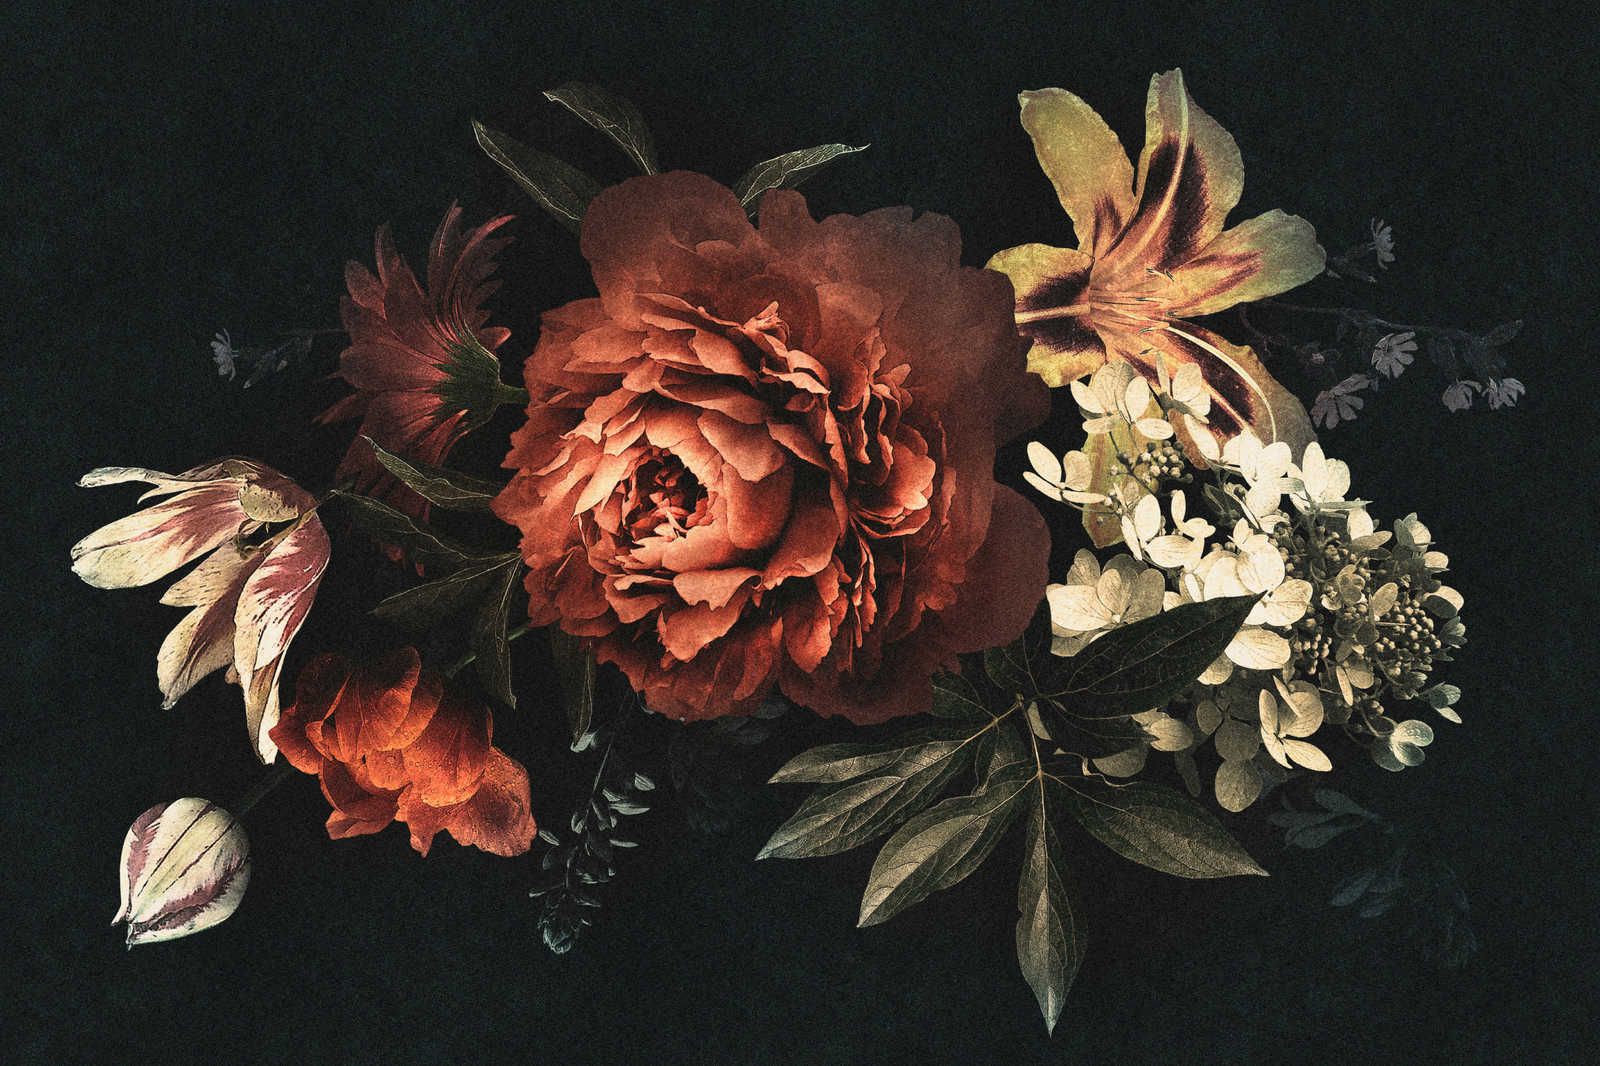             Drama queen 1 - Quadro su tela con bouquet di fiori e sfondo scuro - 1,20 m x 0,80 m
        